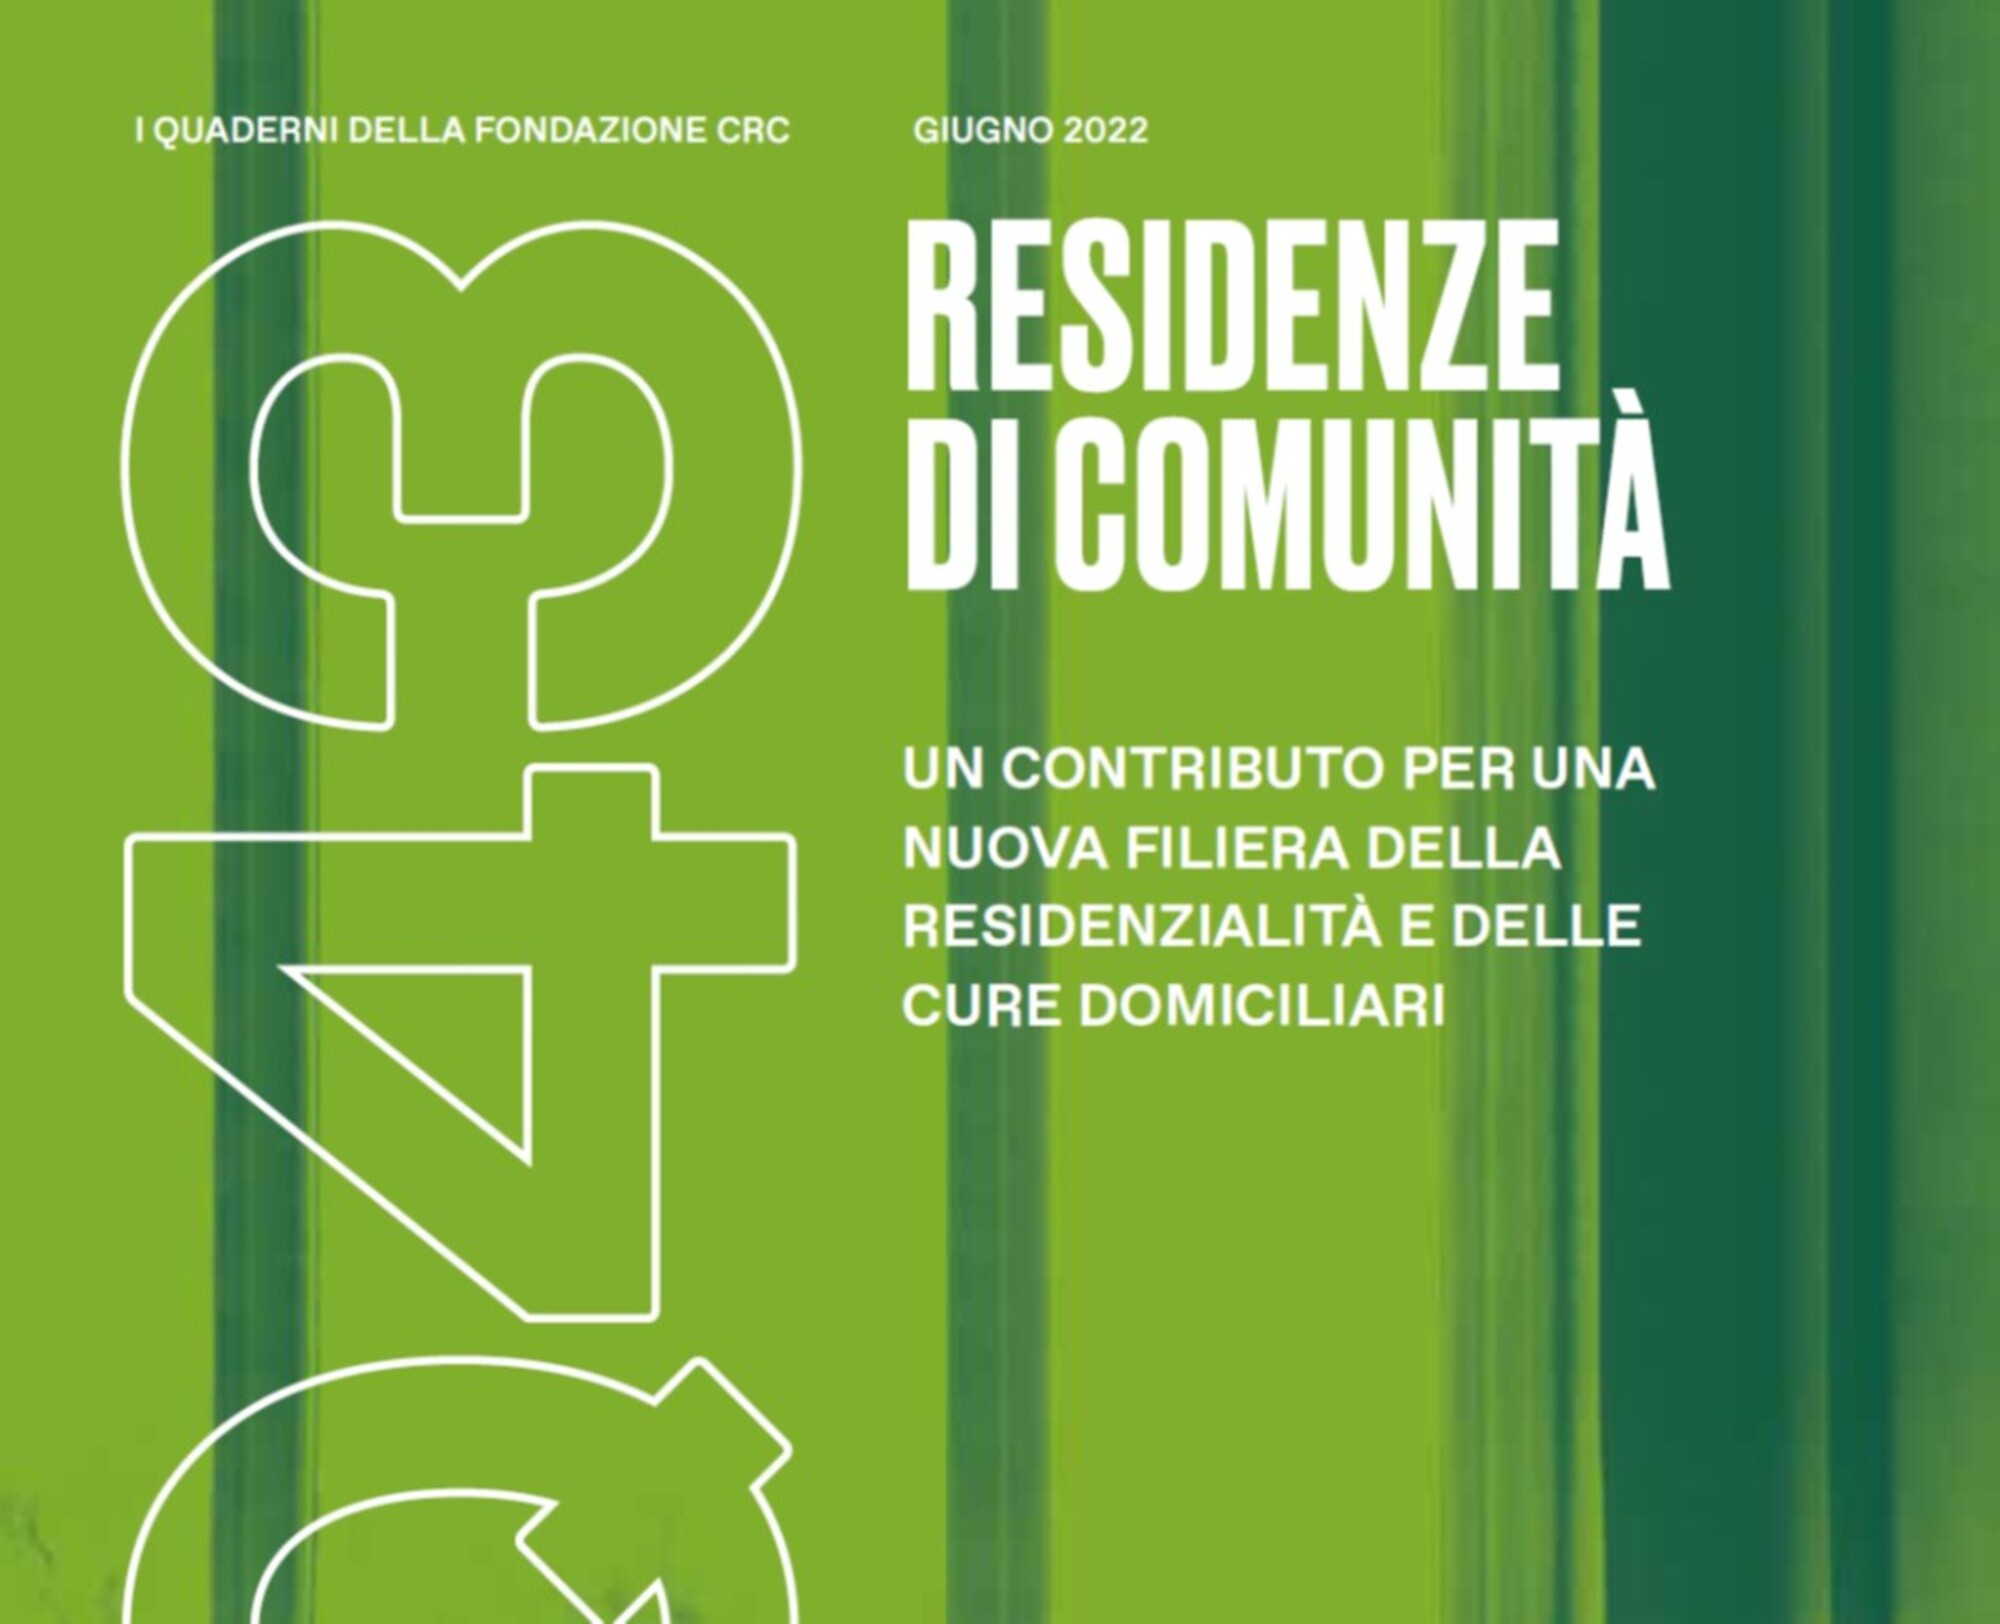 Residenze di Comunità. Il “Quaderno 43” della Fondazione Cassa di Risparmio  di Cuneo - GE.S.A.C. A.C.L.I